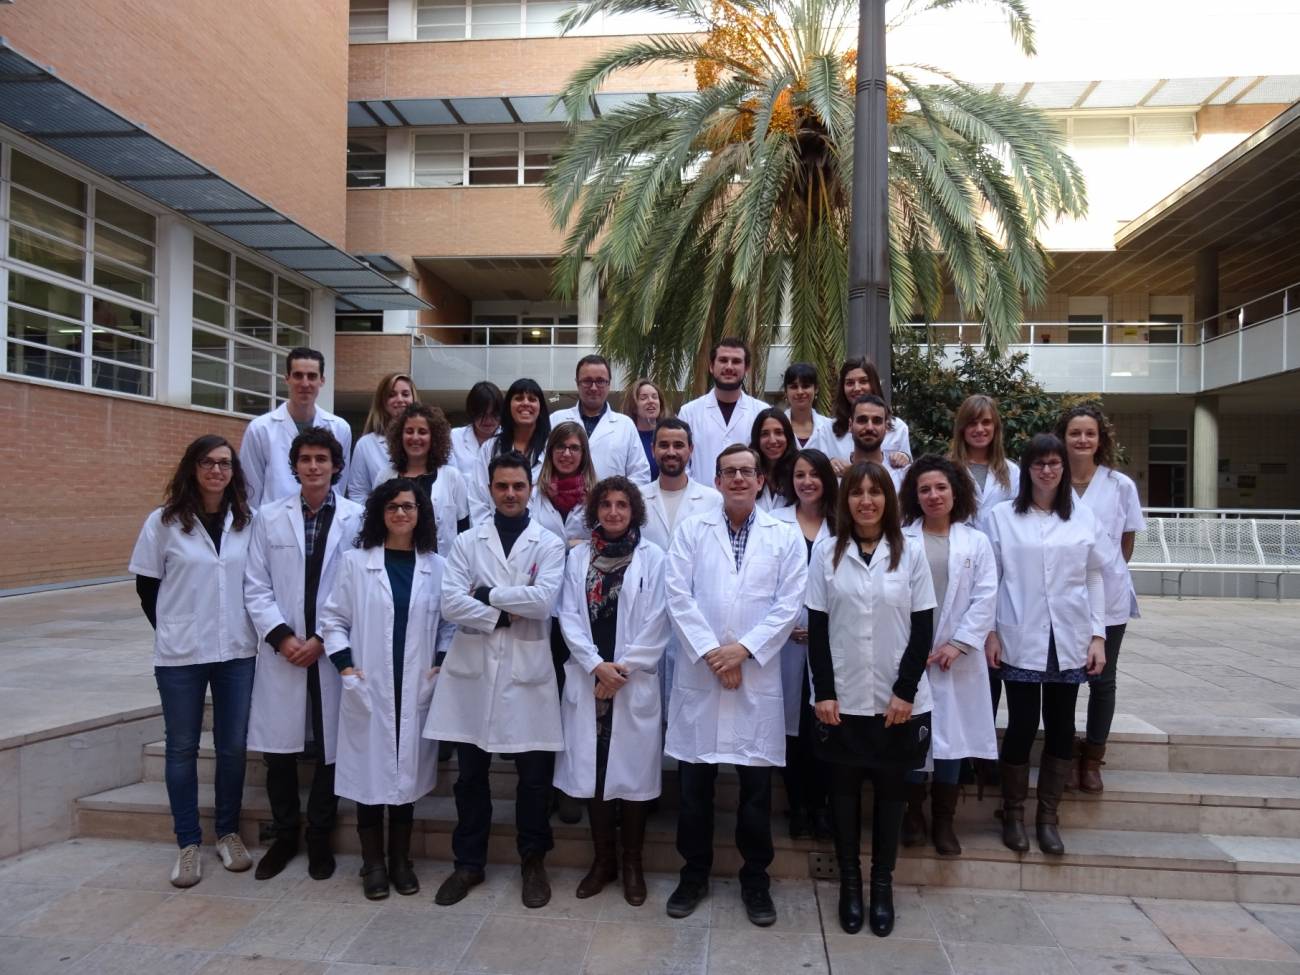  Investigadores de la Unidad de Nutrición Humana de la Universidad Rovira i Virgili, que han liderado el estudio.